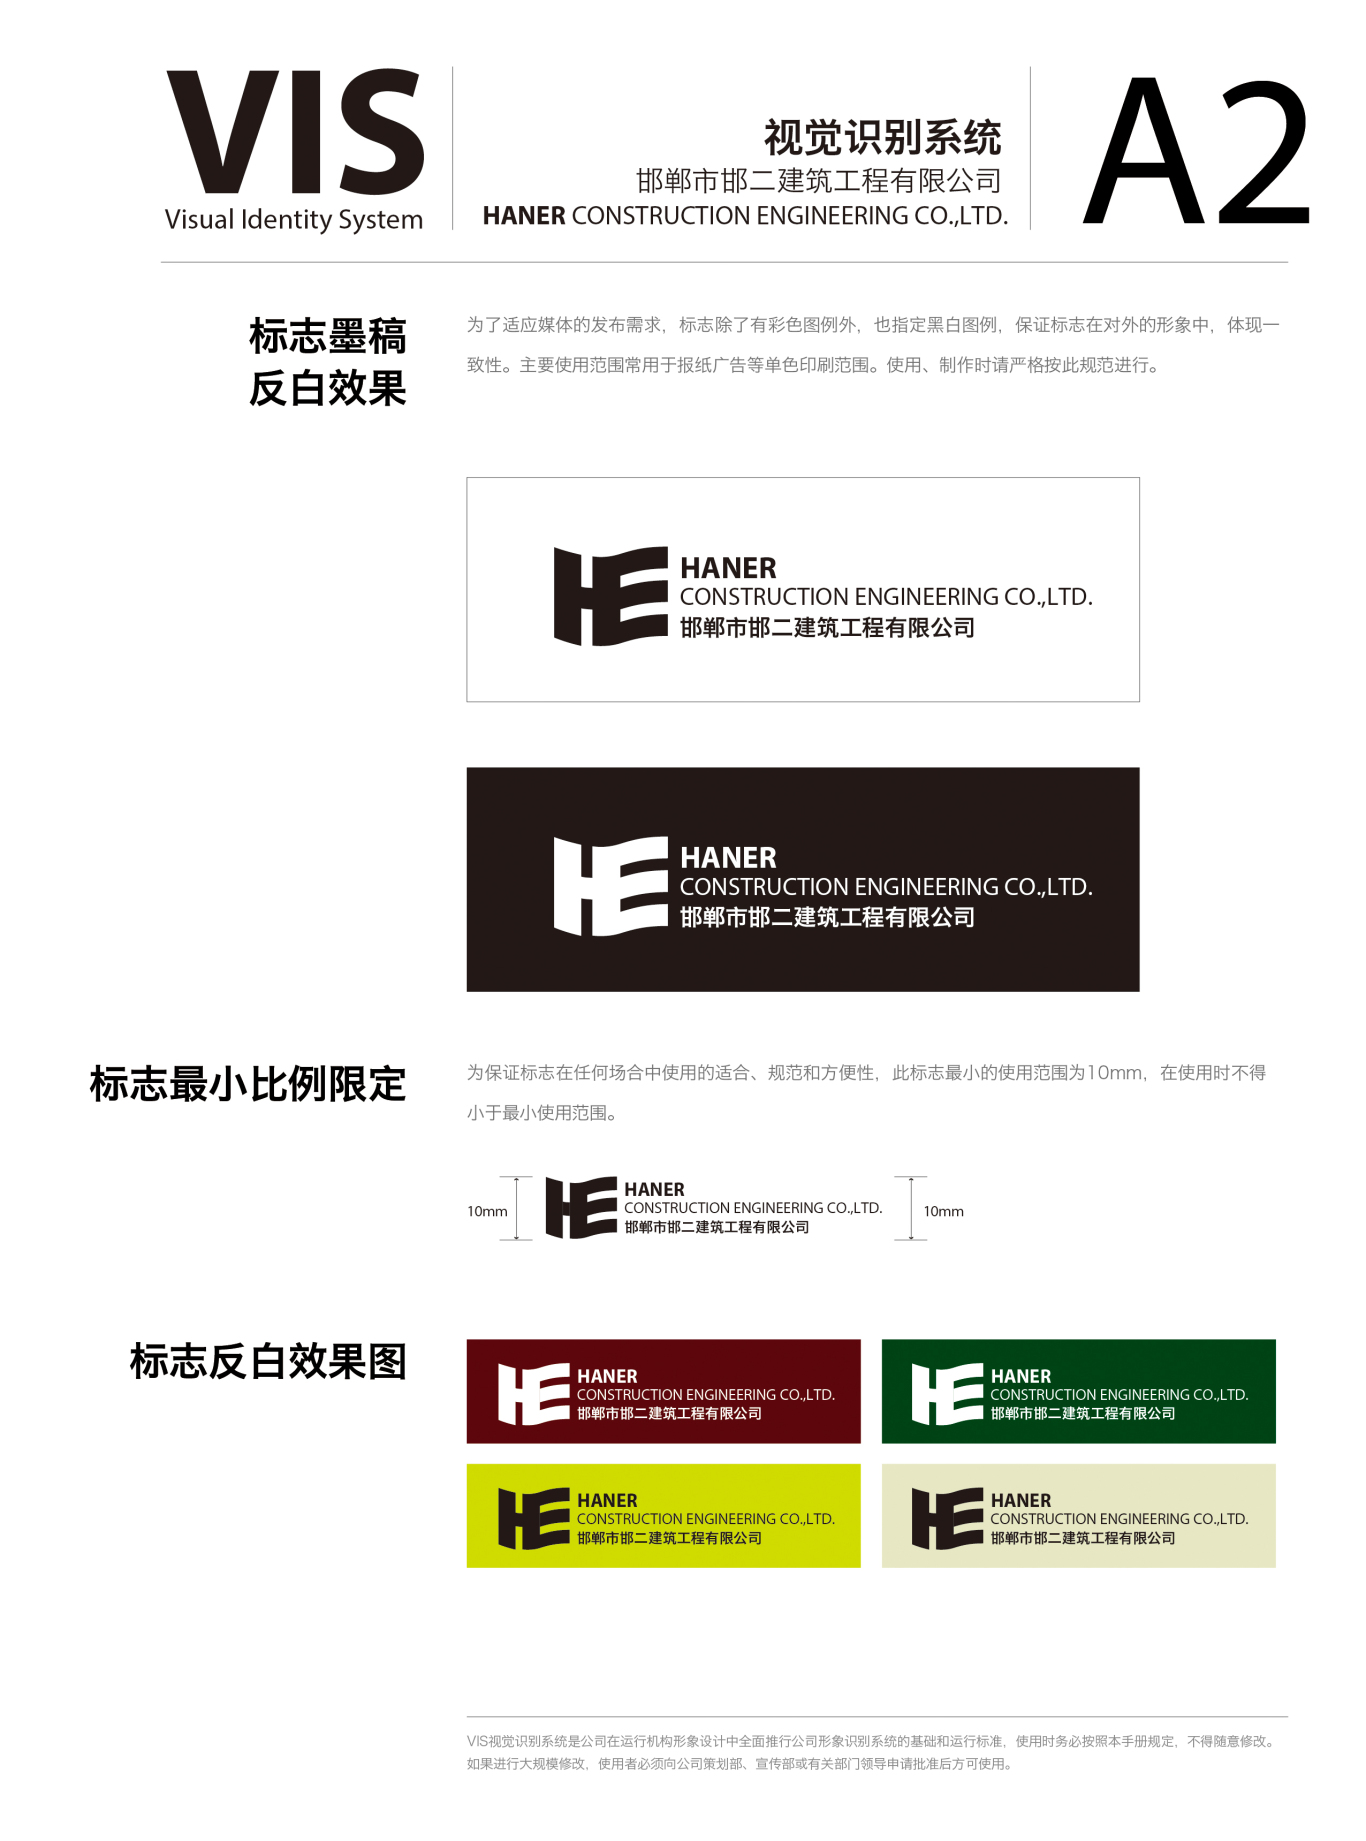 邯郸第二建筑有限公司logo 及 VIS图3